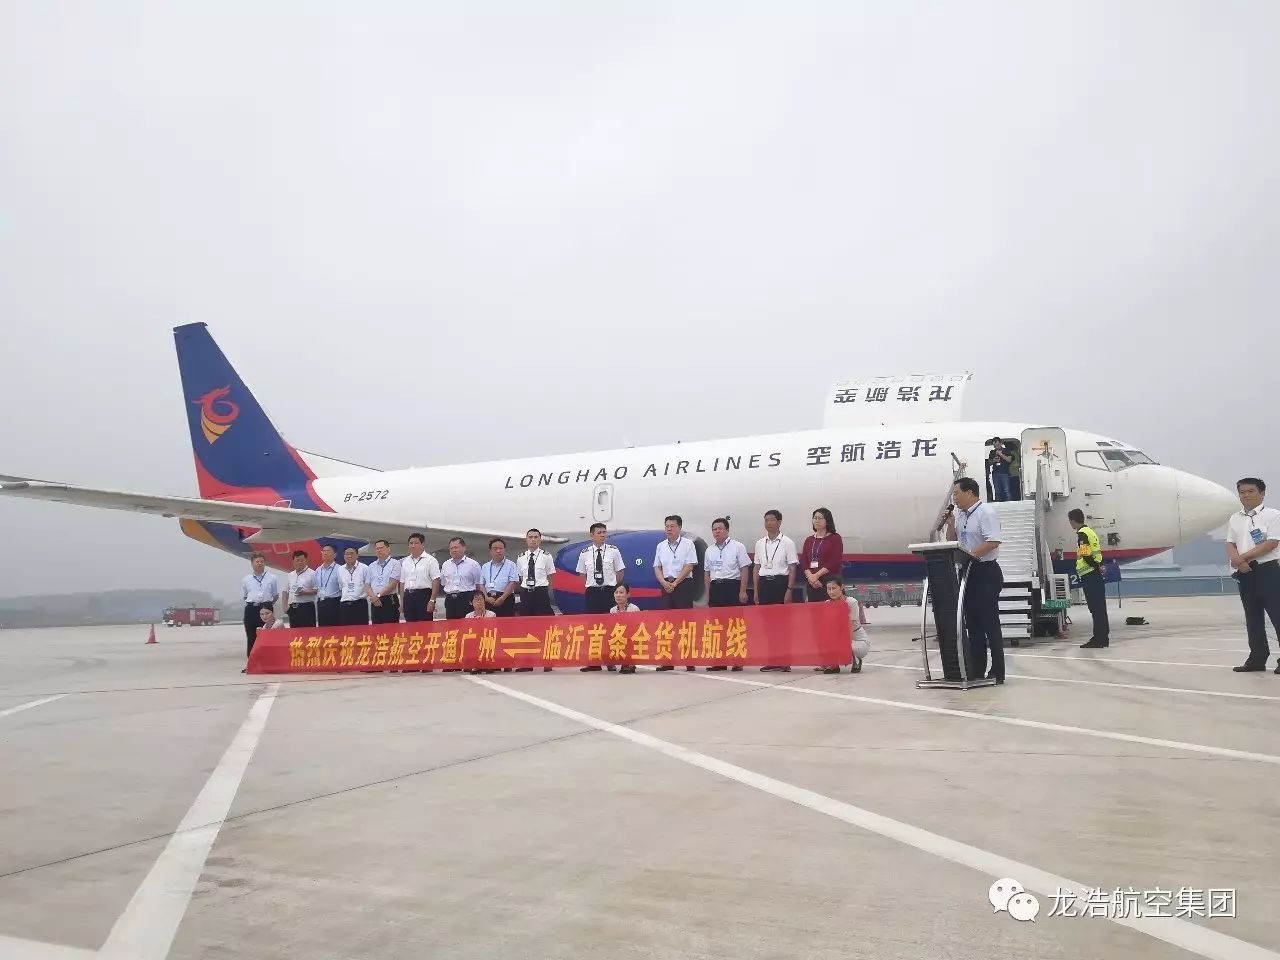 9月25日清晨,广东龙浩航空有限公司b-2572飞机载着12.